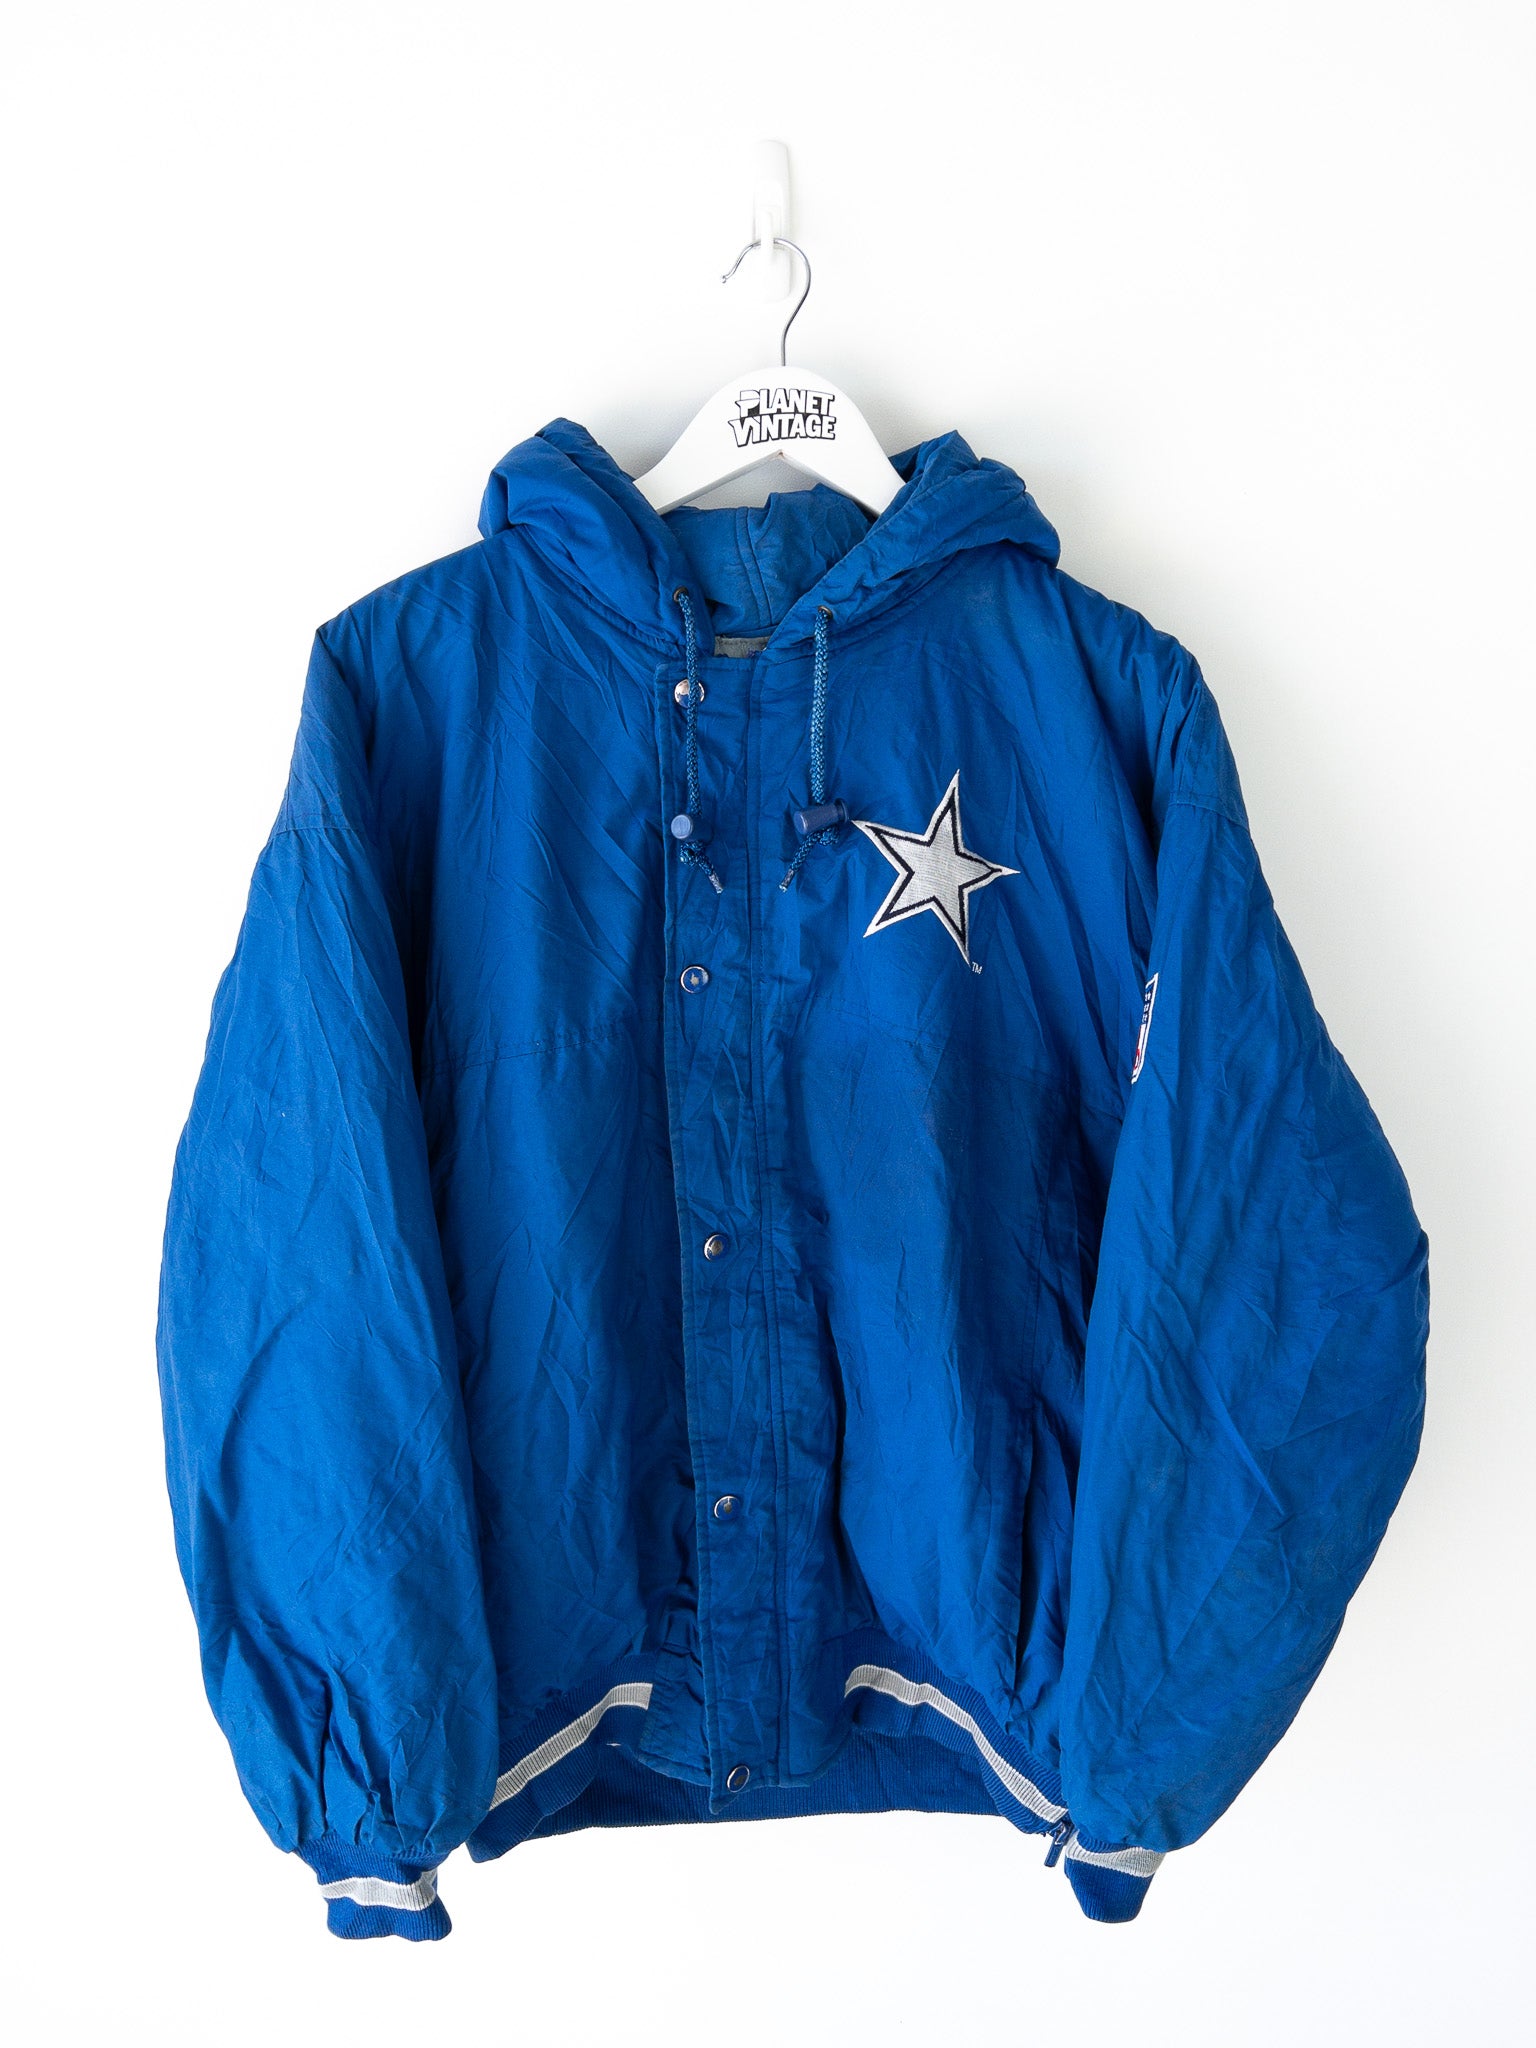 Vintage Dallas Cowboys Jacket (L)